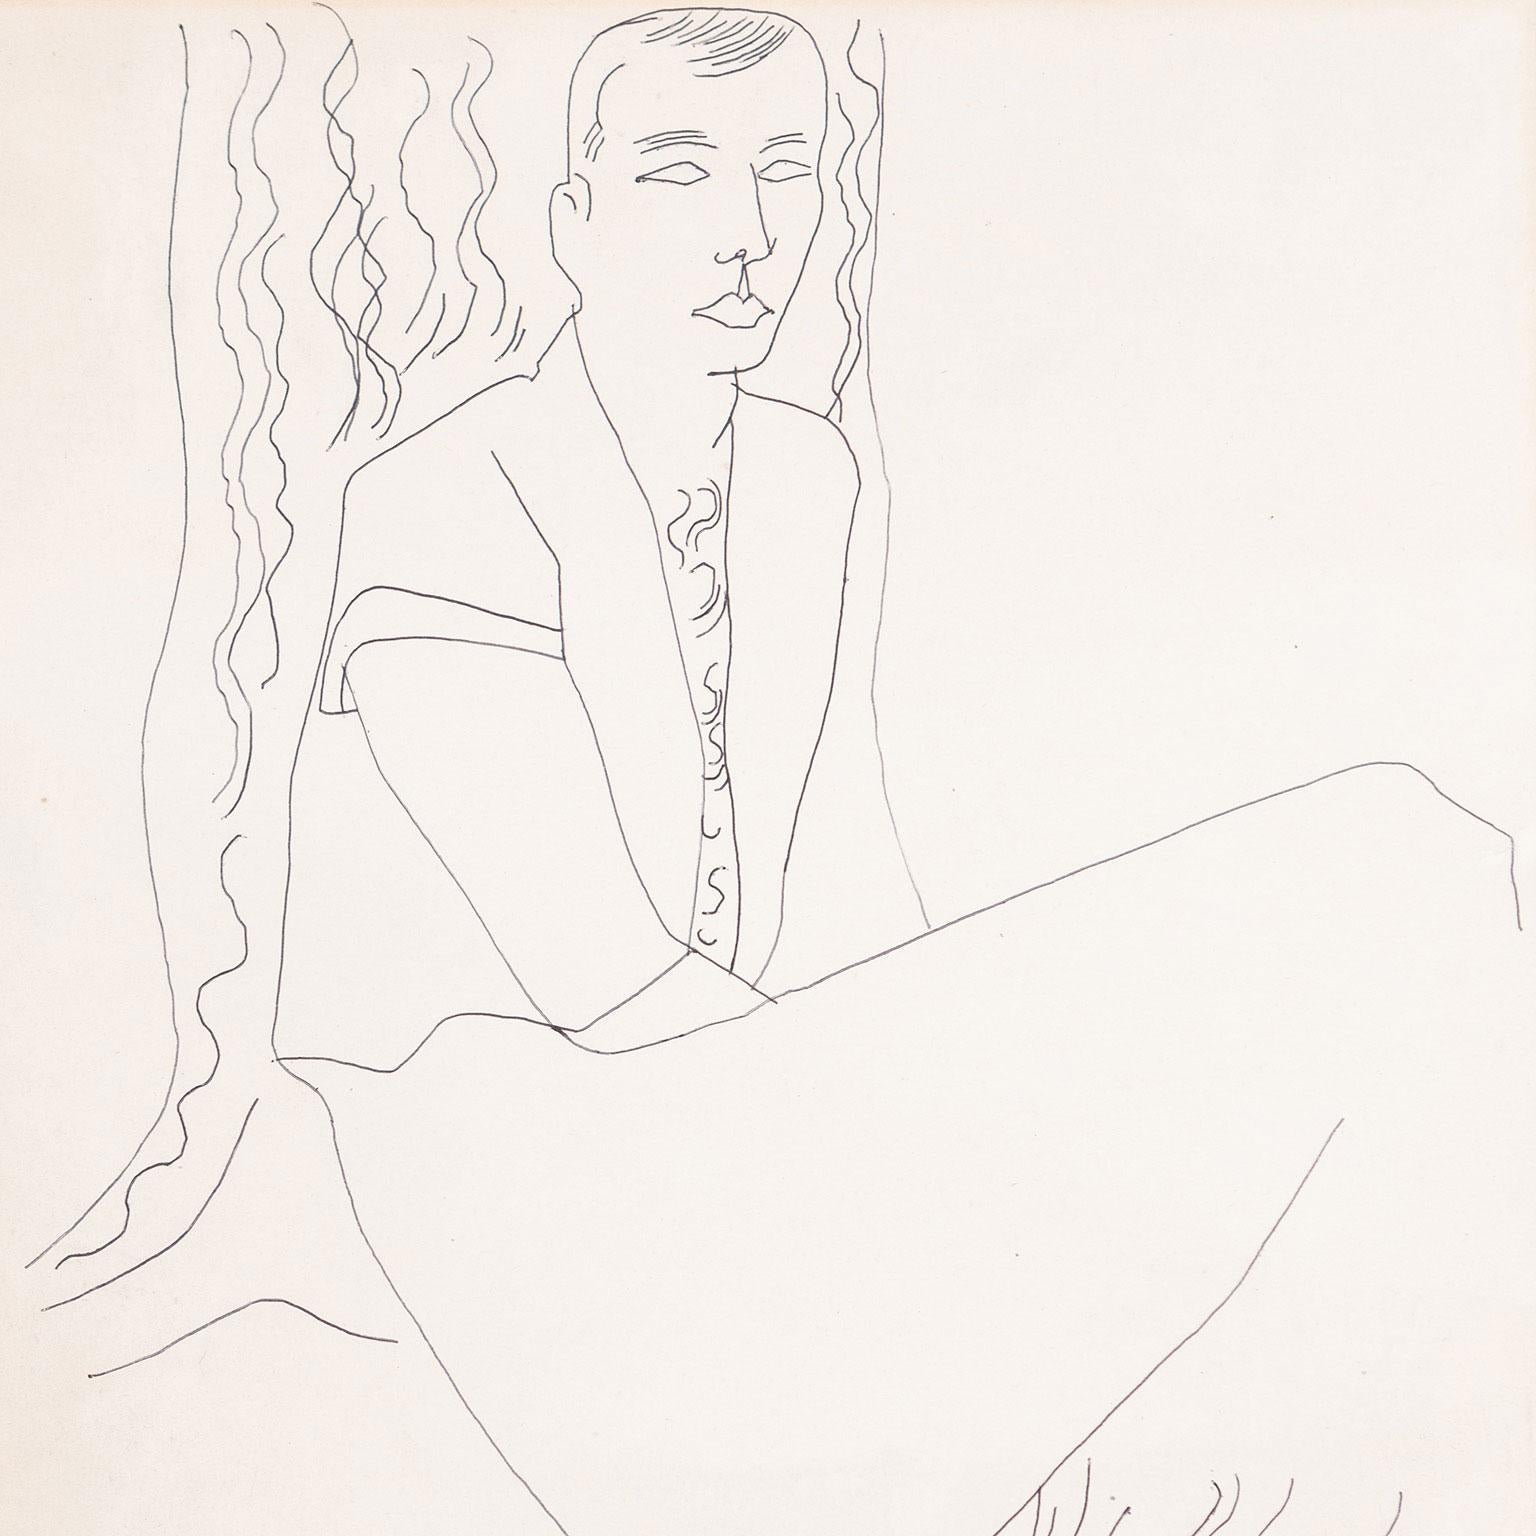 Andy Warhol (1928-1987) ist der wohl bedeutendste amerikanische Künstler des 20. Jahrhunderts. Er definierte nicht nur die Pop Art, sondern hatte auch einen unübertroffenen Einfluss auf Künstler und Bildgestaltung. 

In den letzten Jahren hat es